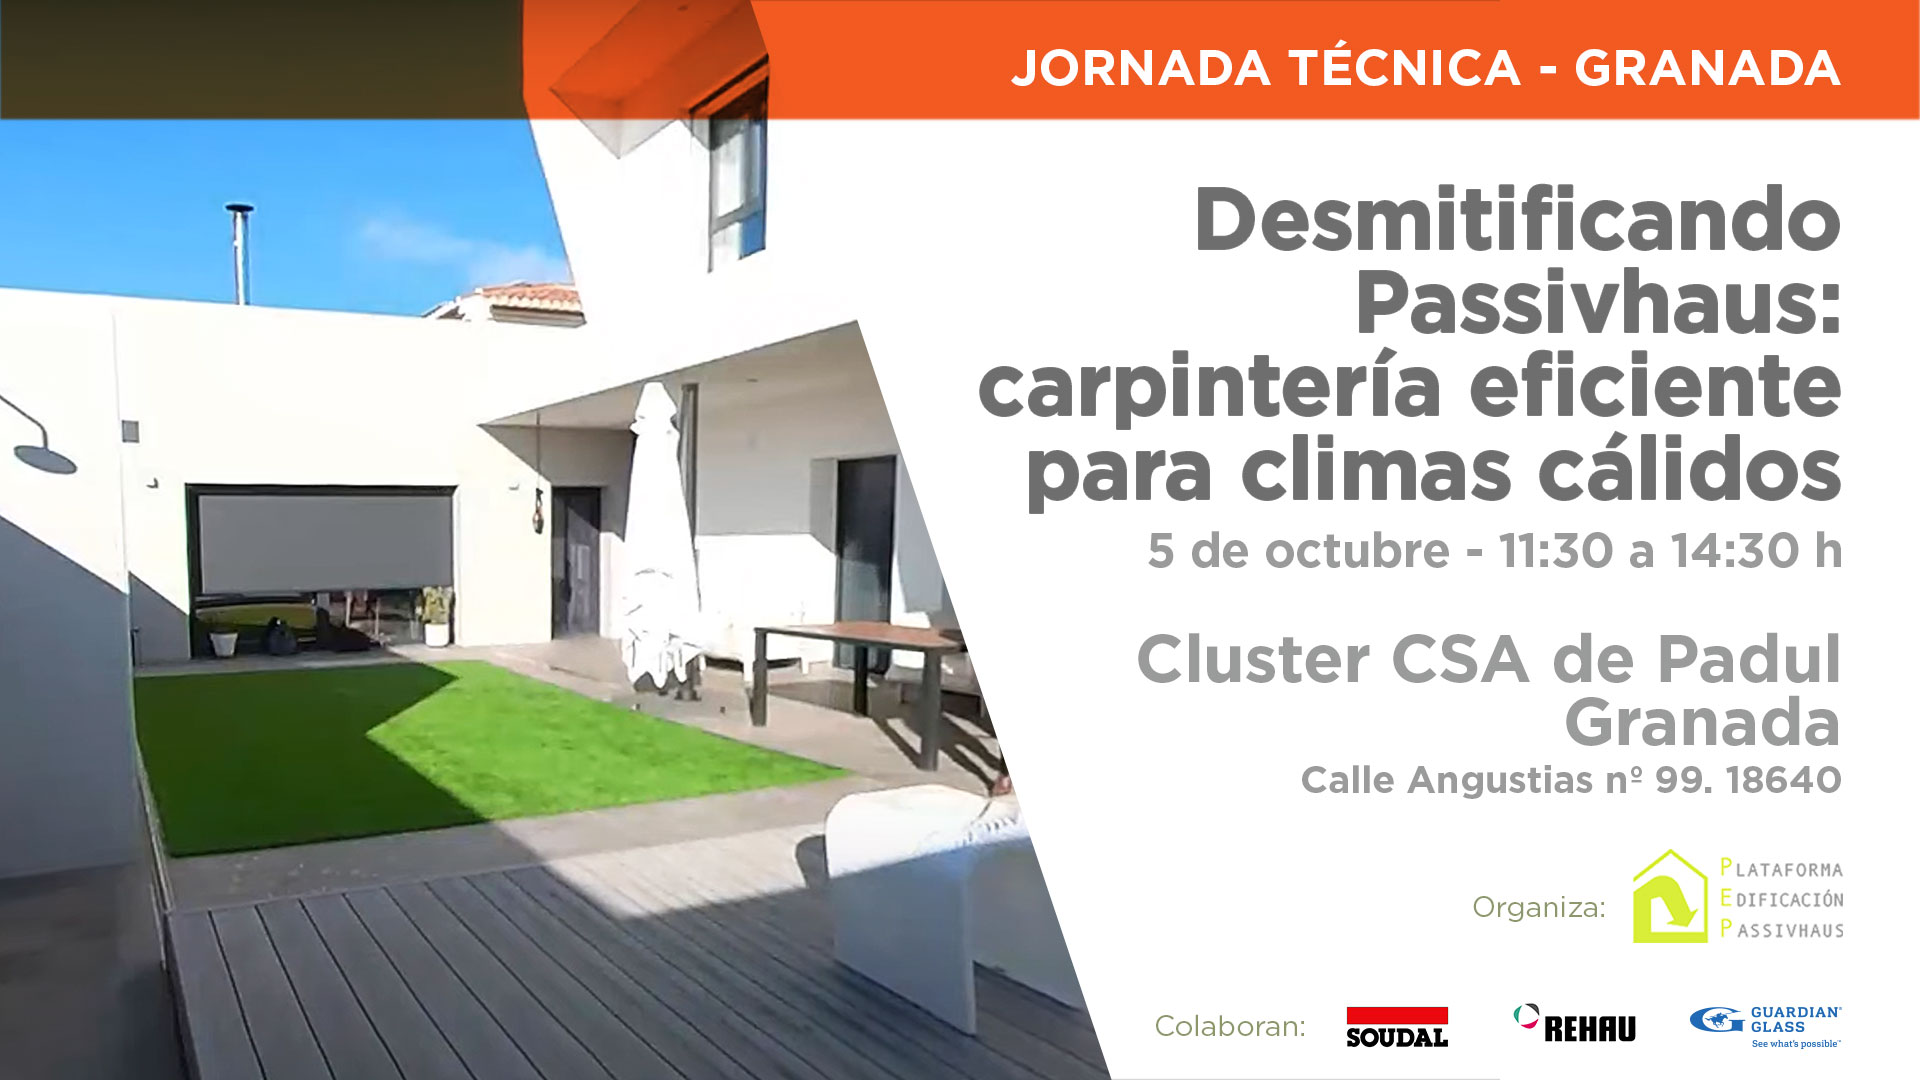 Jornada Técnica - Desmitificando Passivhaus: carpintería eficiente para climas cálidos - Granada